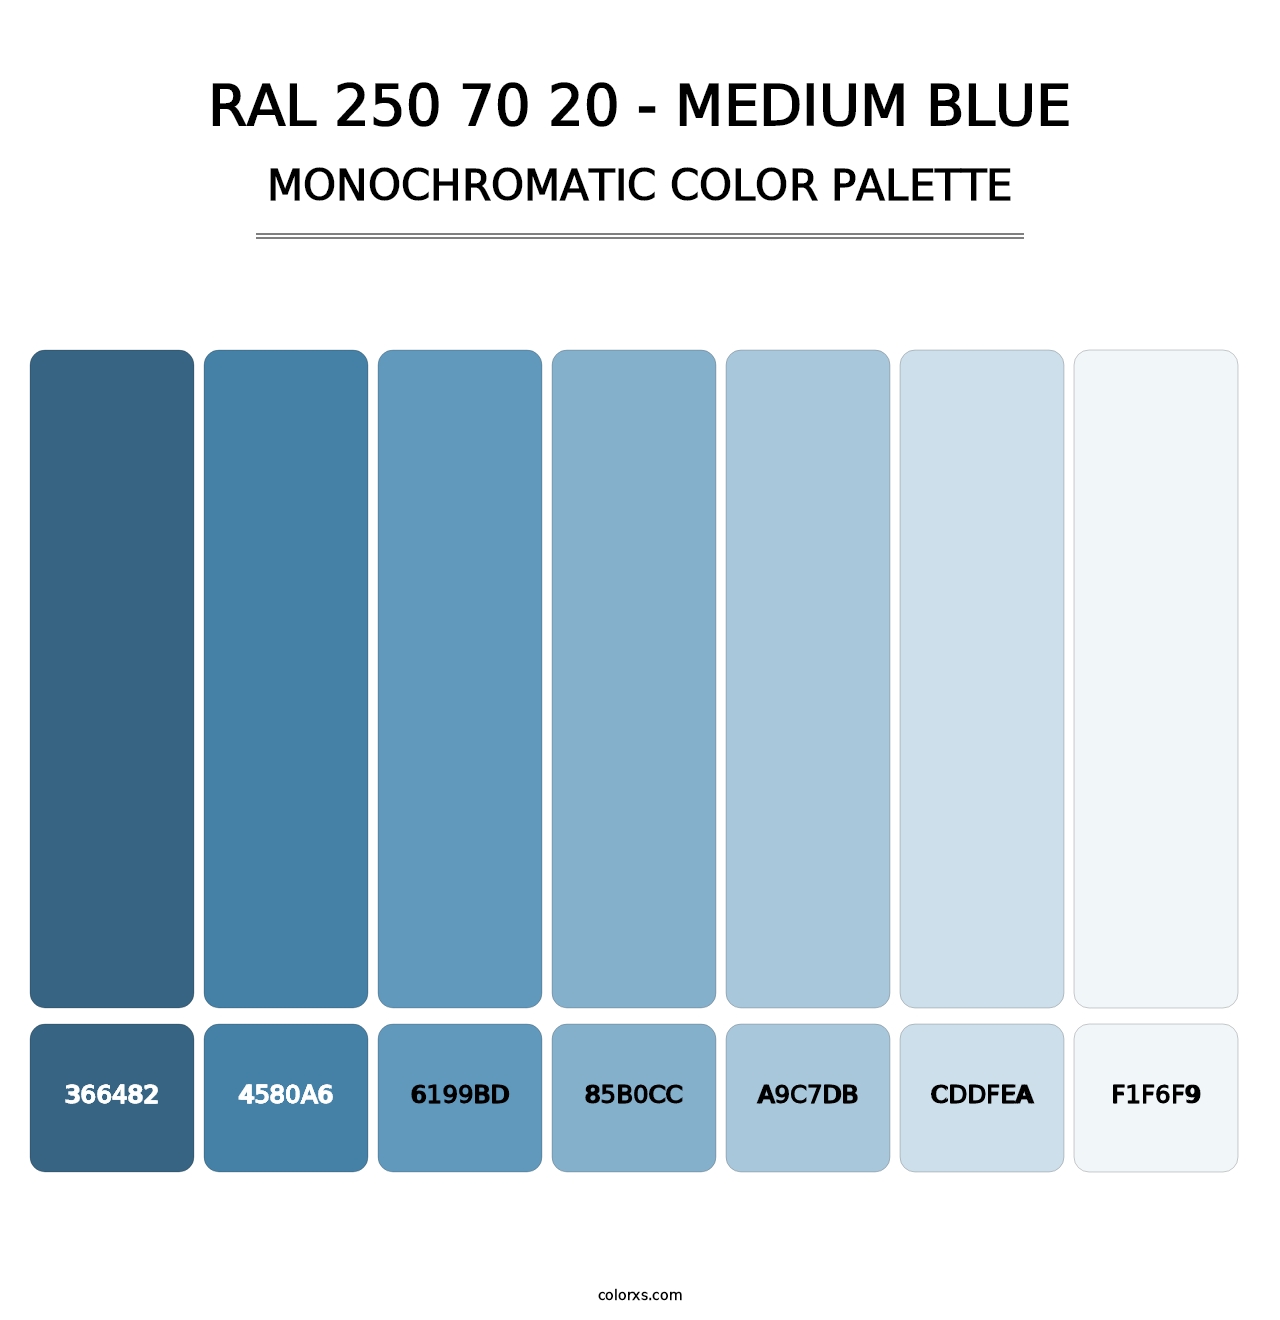 RAL 250 70 20 - Medium Blue - Monochromatic Color Palette